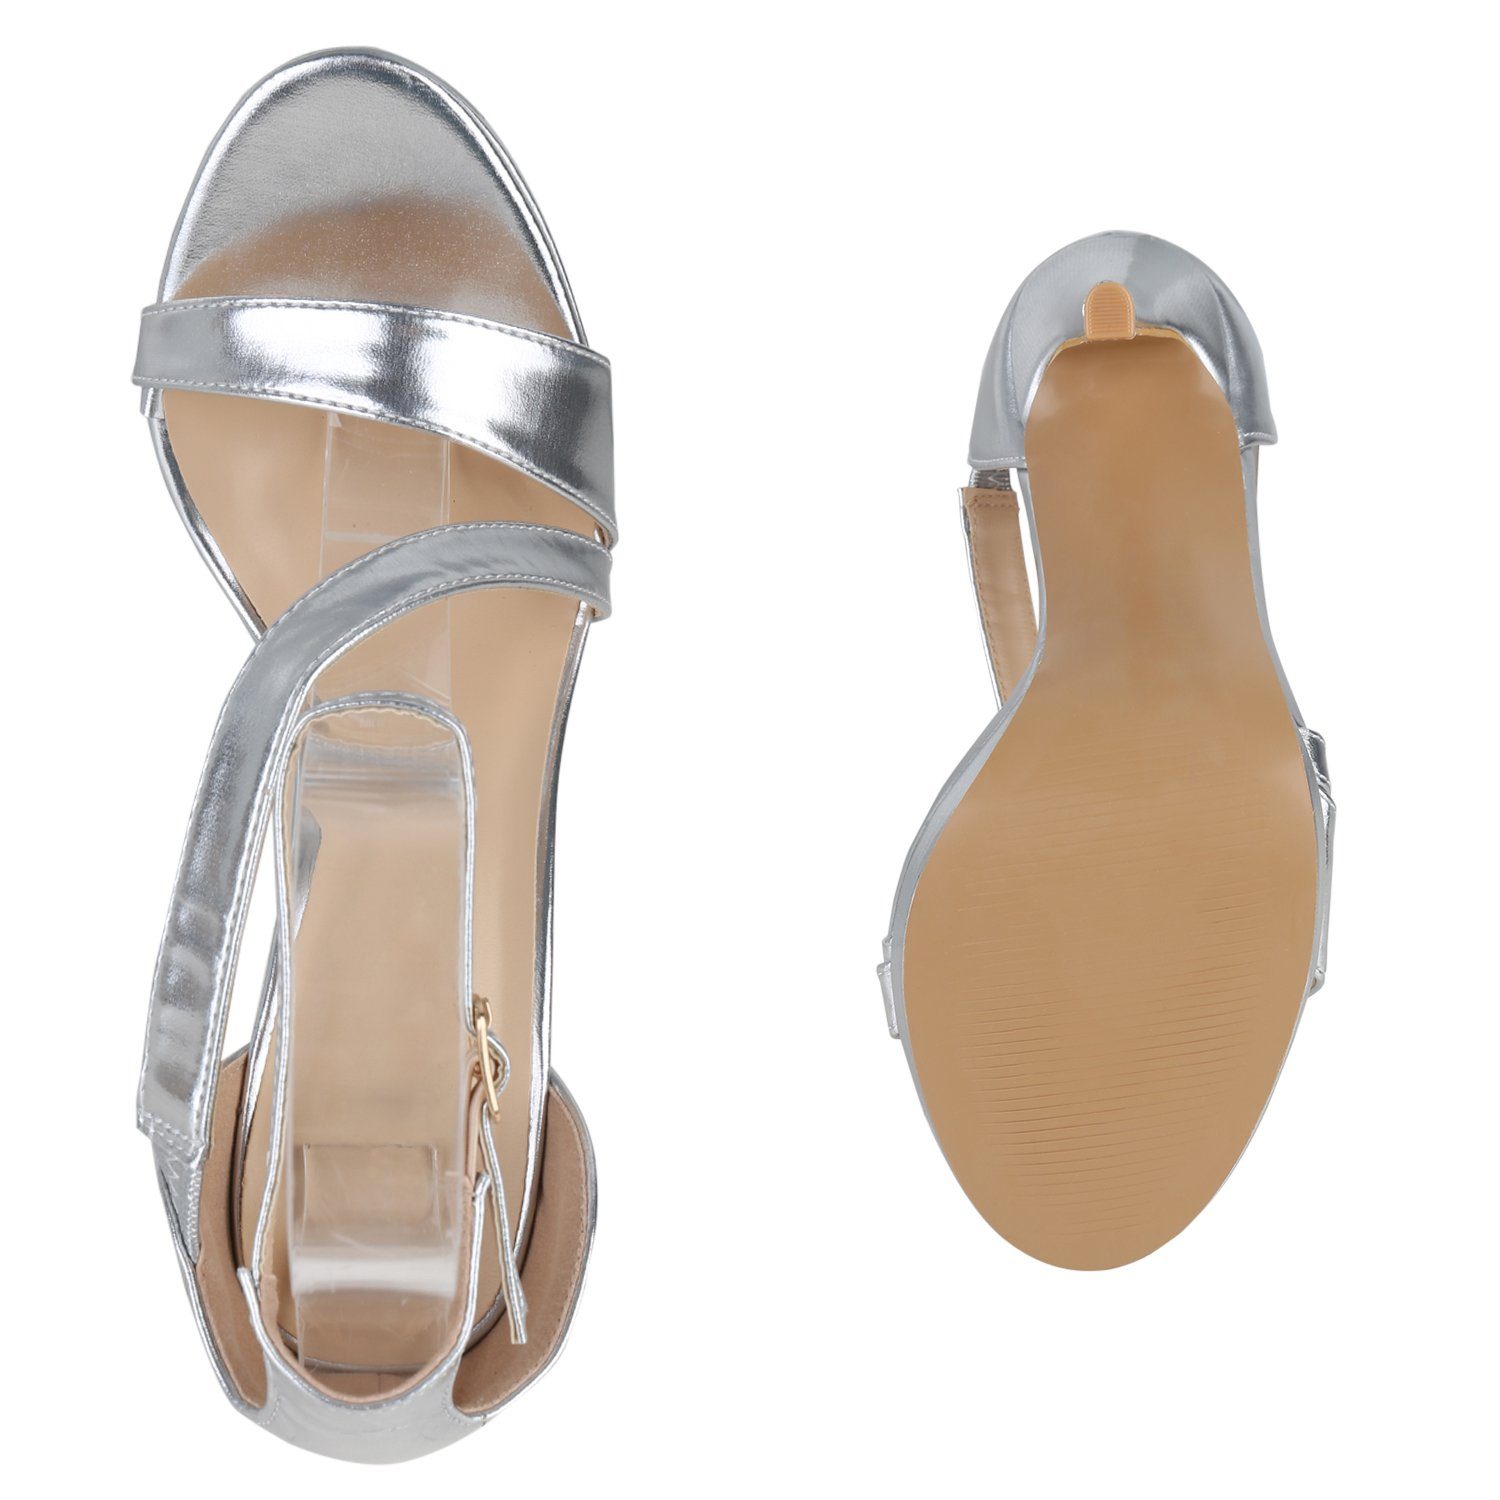 VAN HILL 840096 High-Heel-Sandalette Bequeme Schuhe Silber